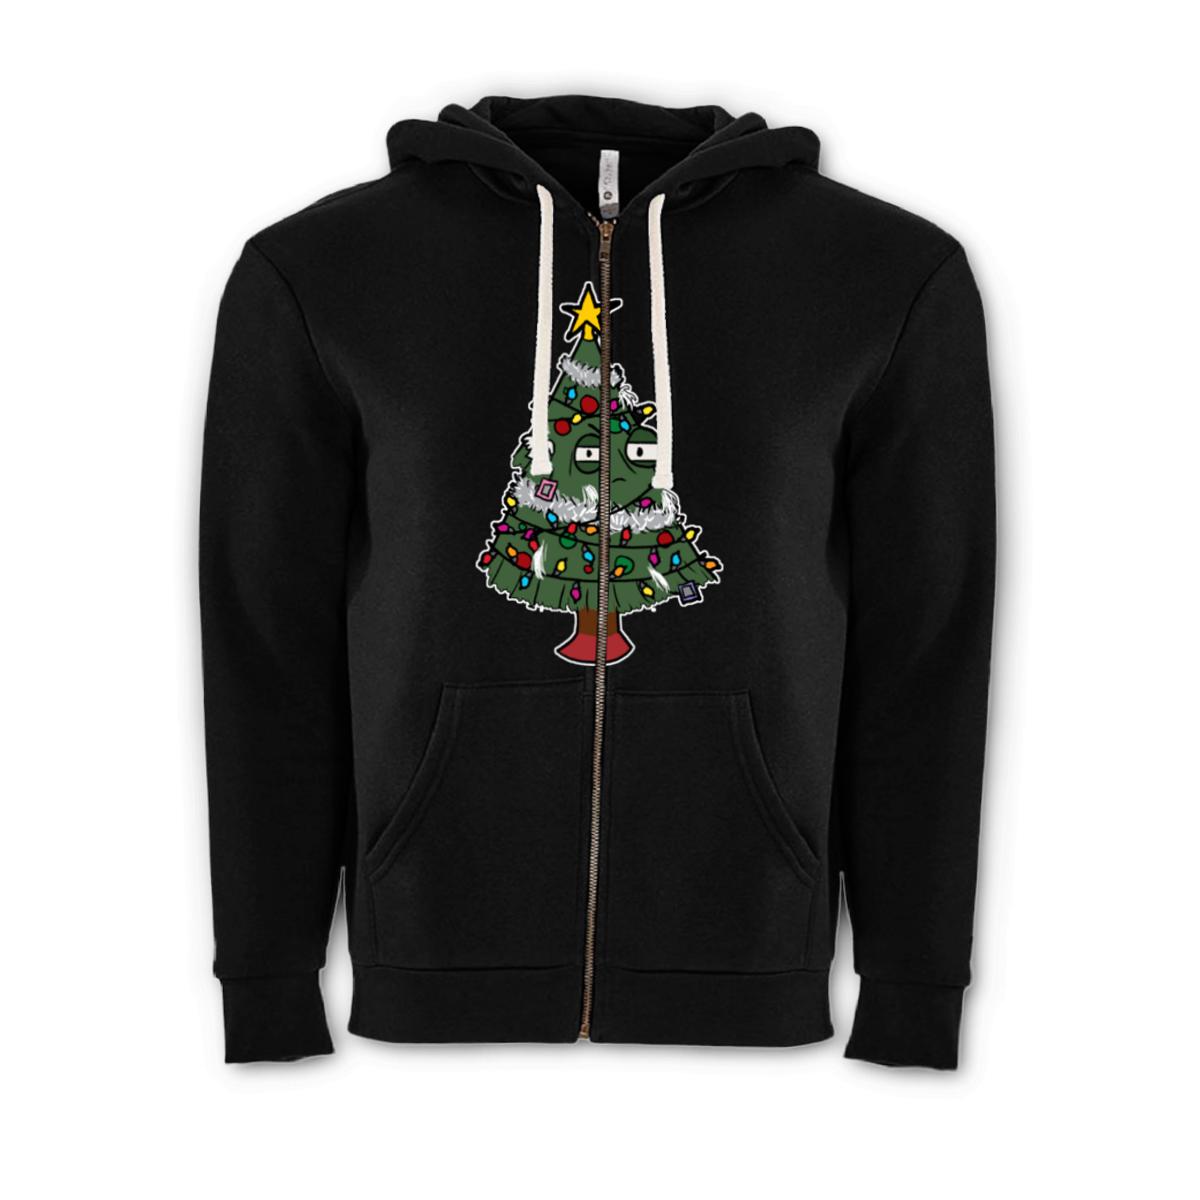 Gaudy Christmas Tree Unisex Zip Hoodie Medium black